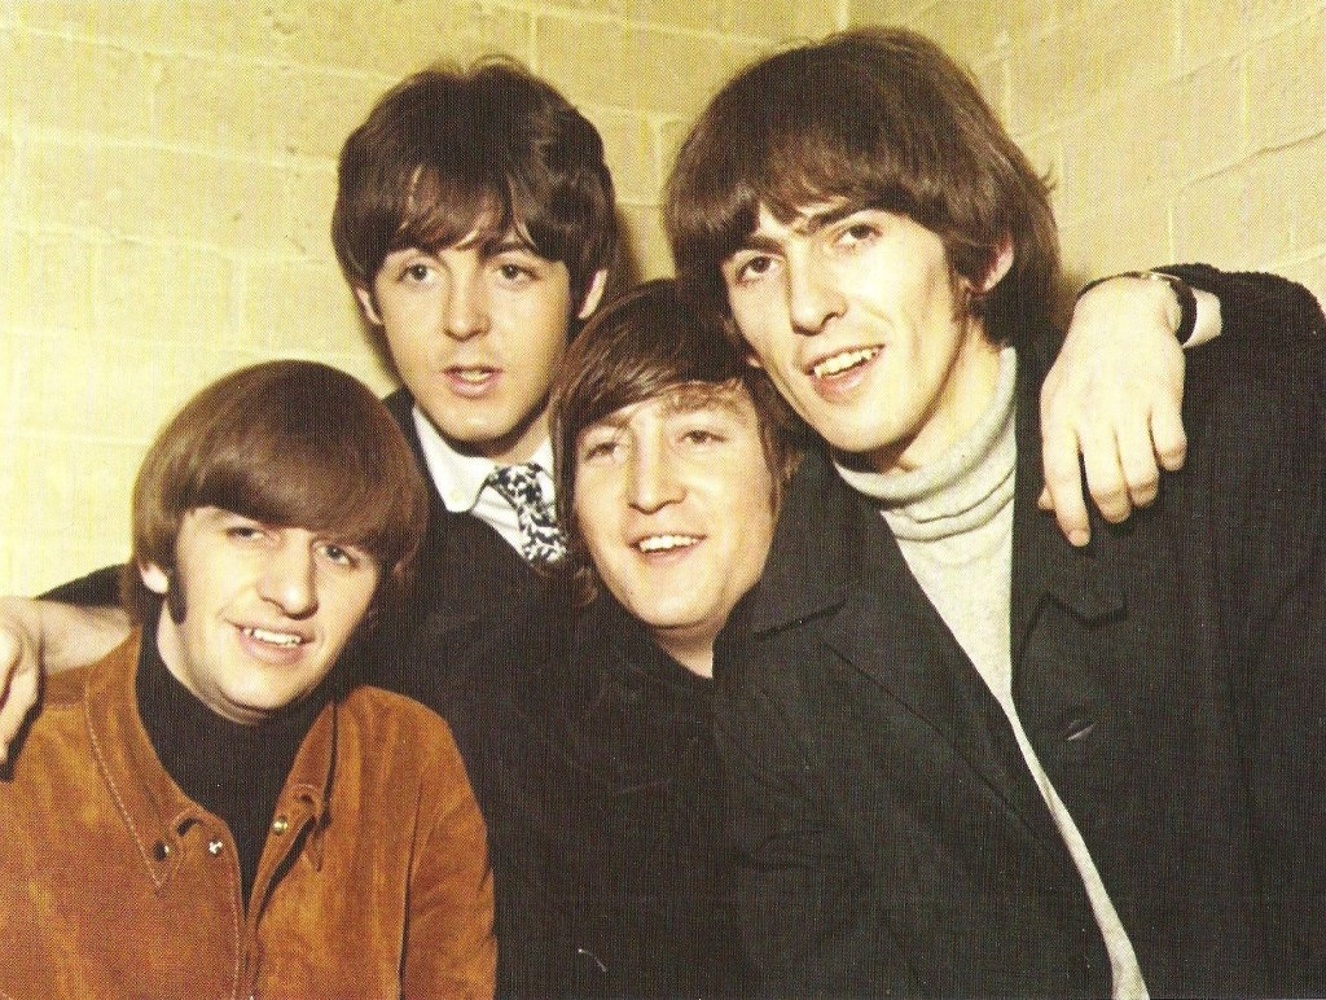 The Beatles on tour: Glasgow premiere